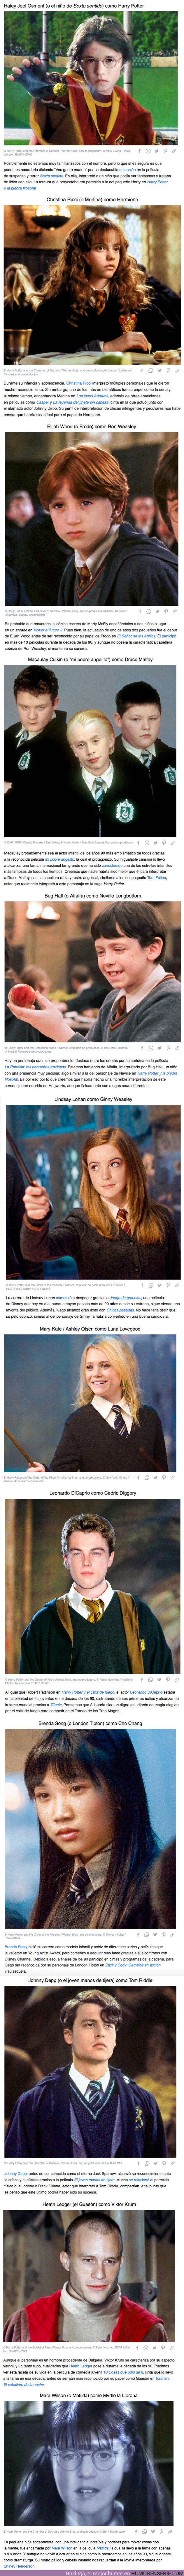 66834 - GALERÍA: Cómo se verían los estudiantes de Hogwarts si “Harry Potter” se hubiera hecho en los 90 con actores famosos de la época